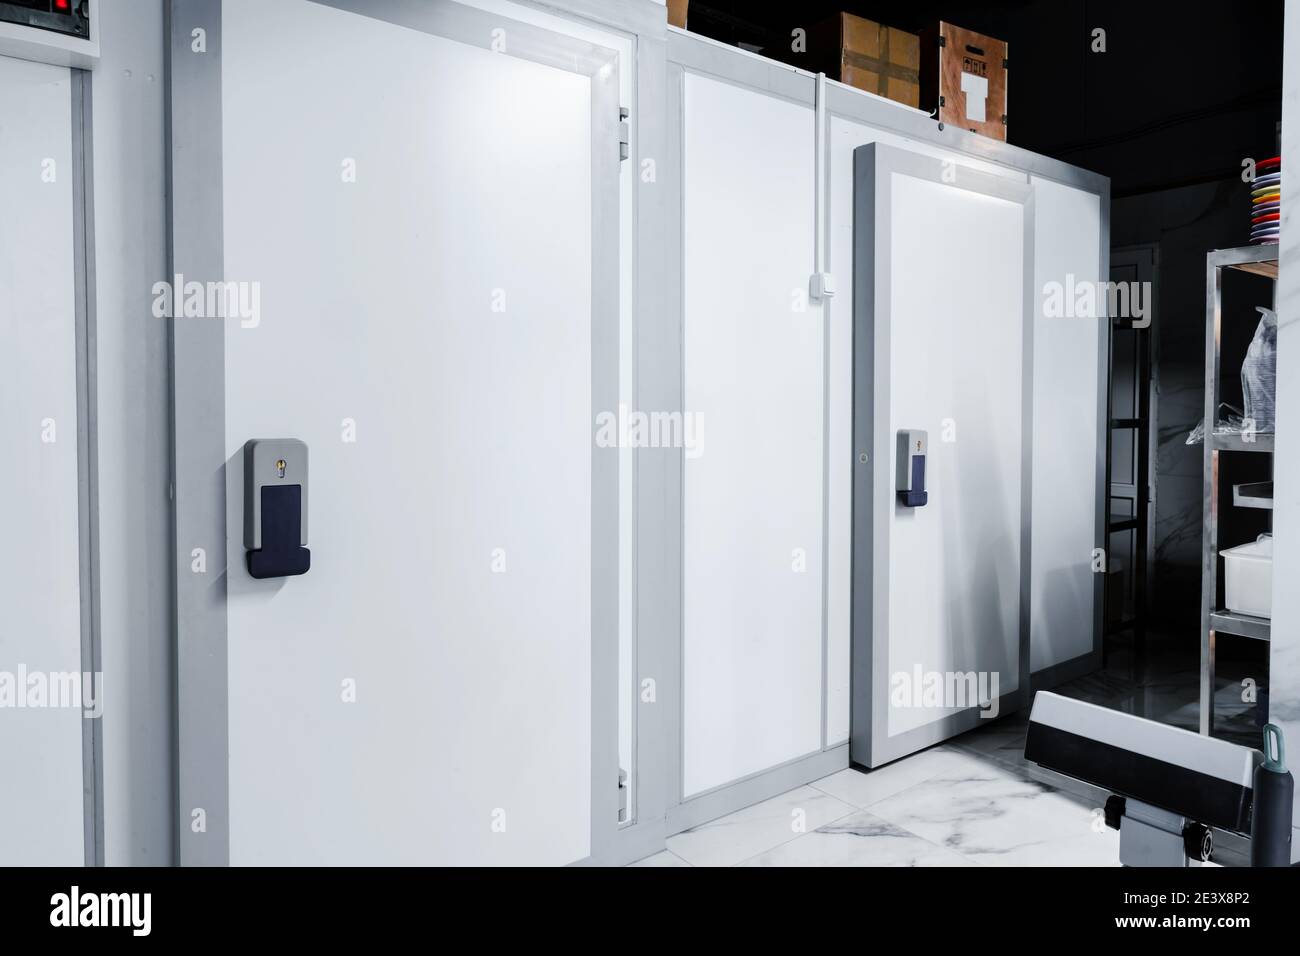 Refrigerator room door in professional kitchen in restaurant Stock Photo